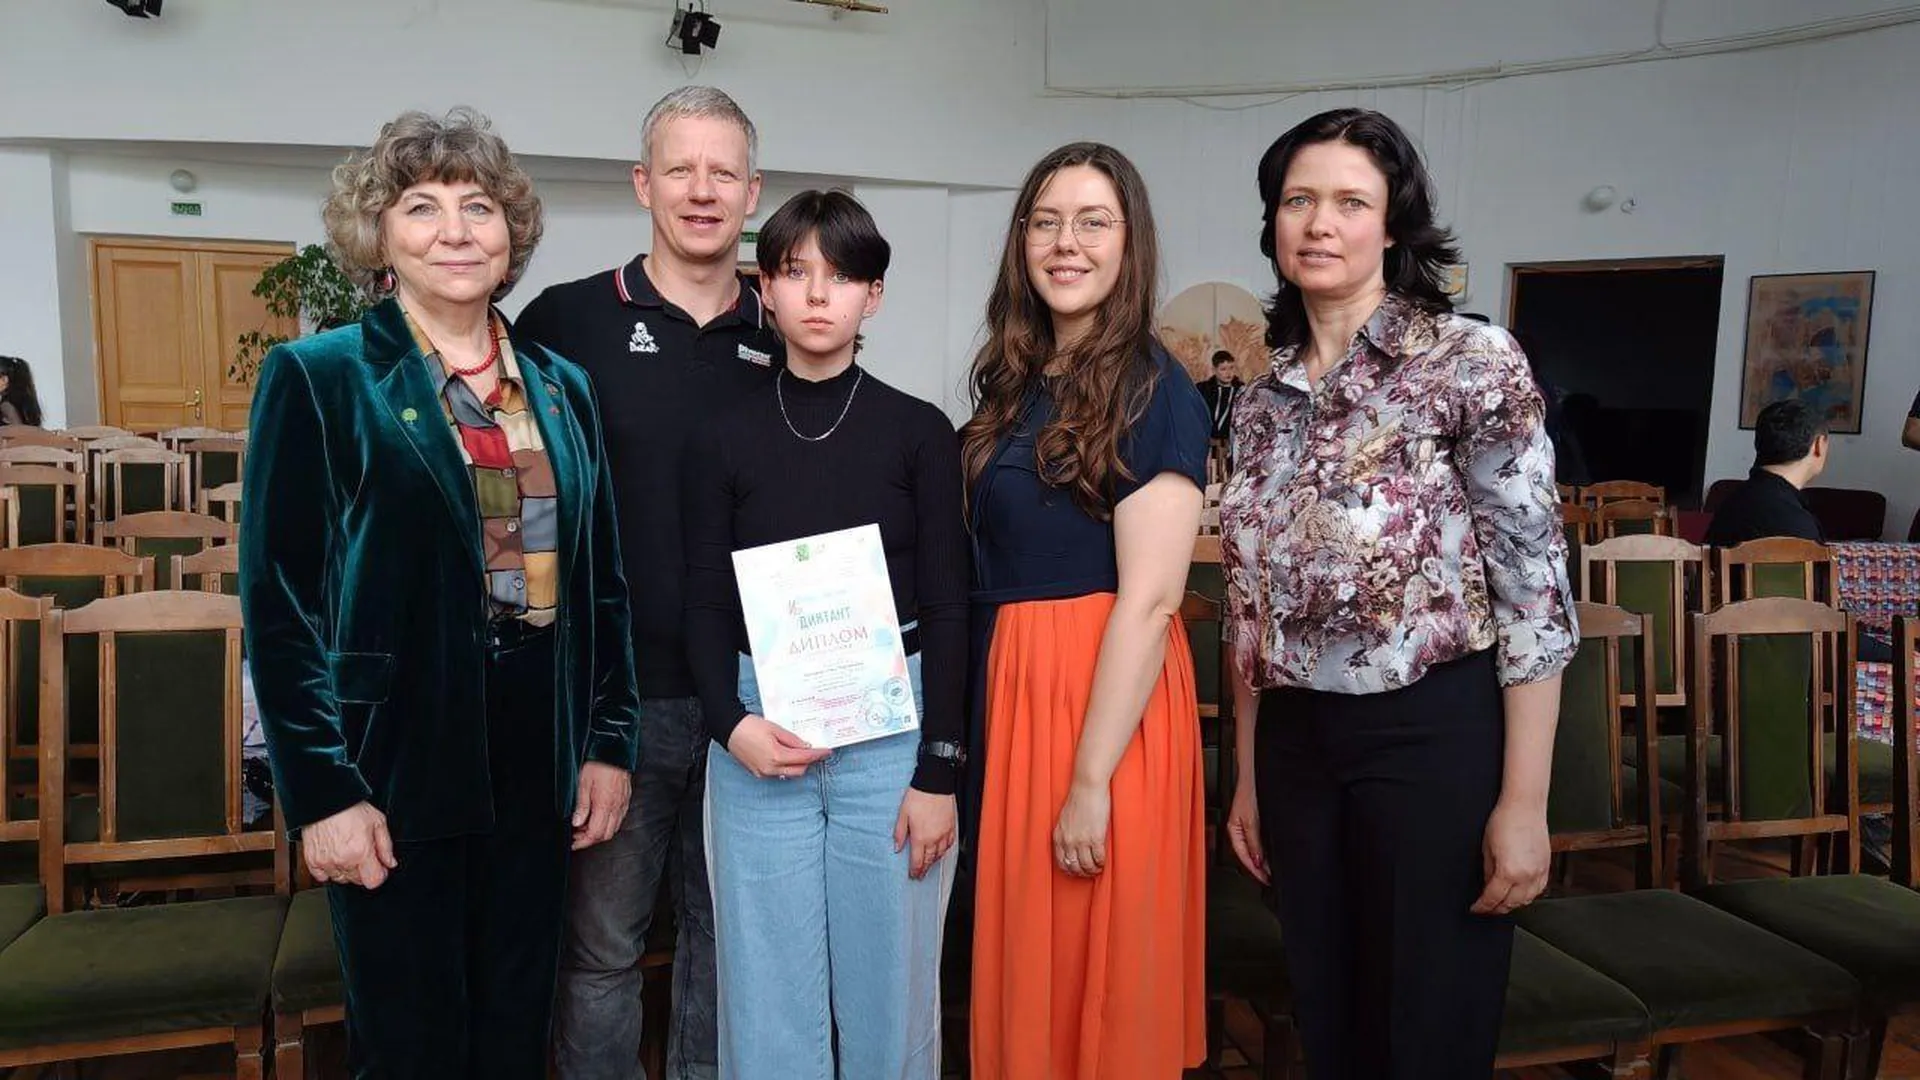 Школьница из Ногинска победила во Всероссийском изодиктанте